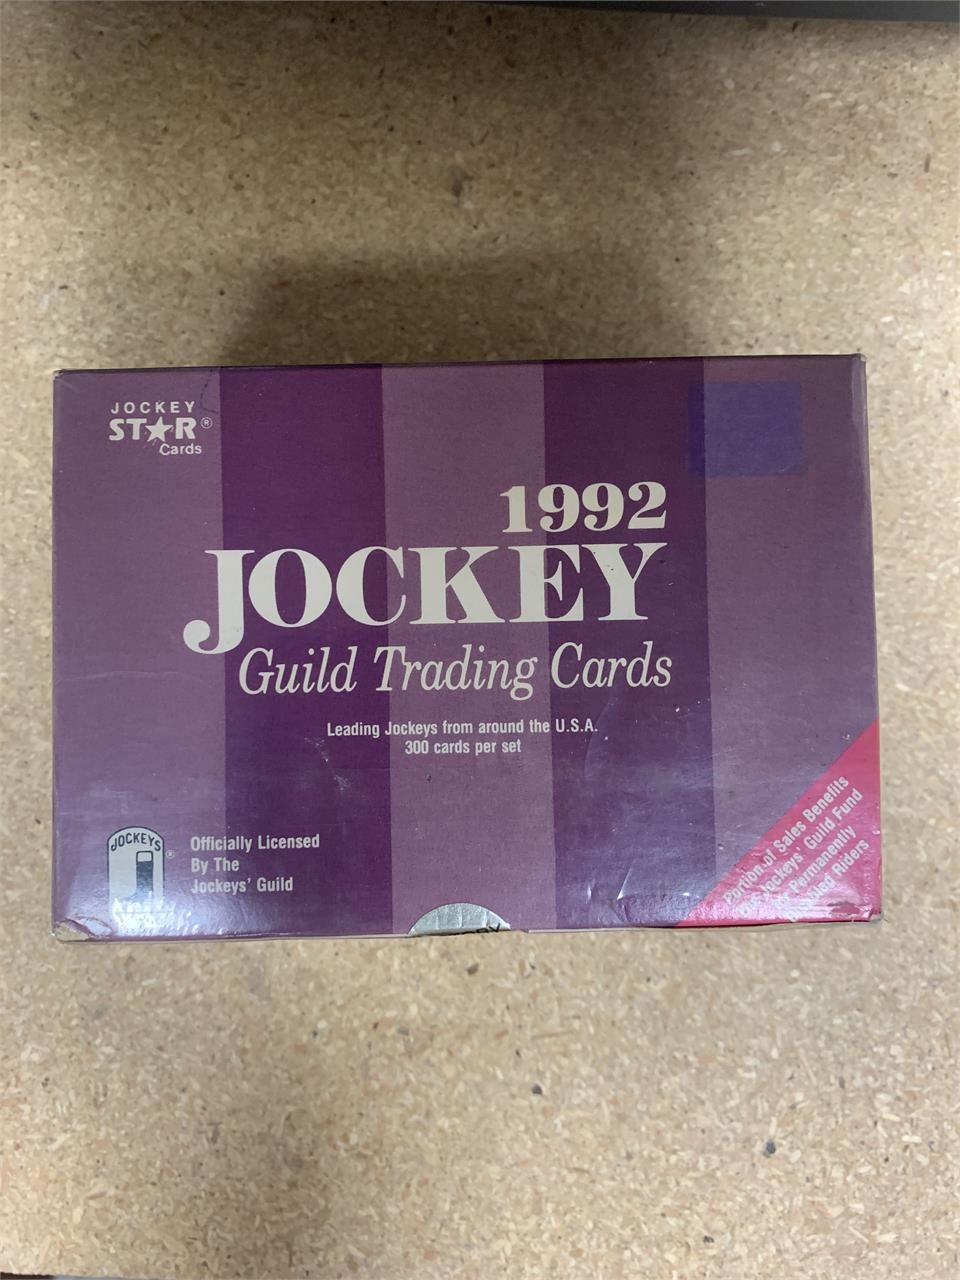 Jockey Star 1992 jockey trading cards